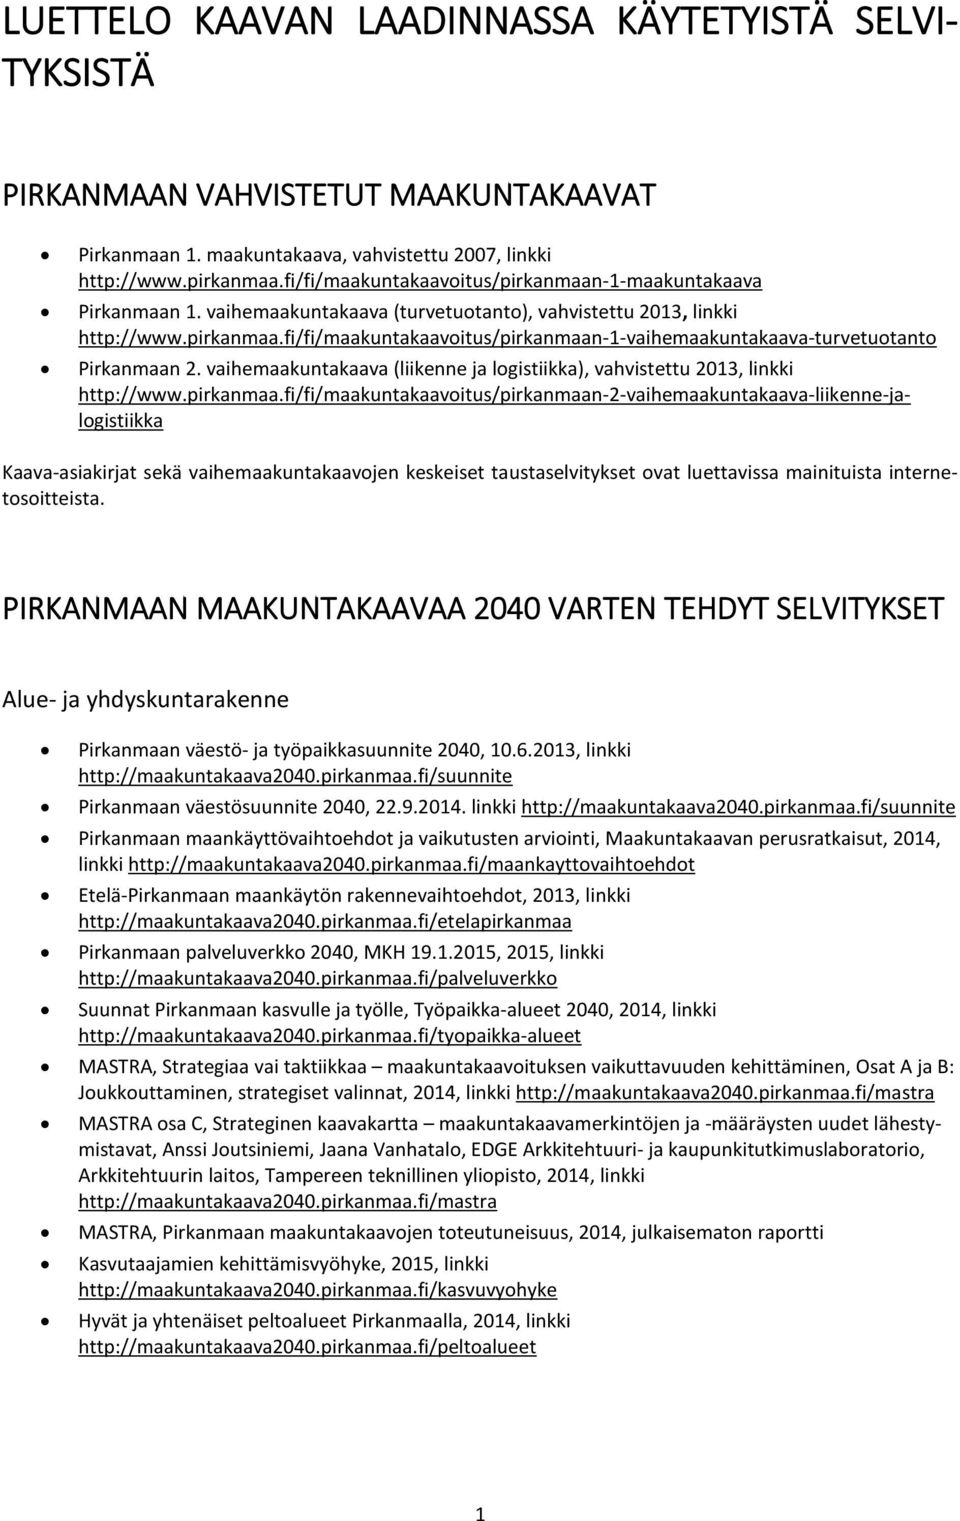 vaihemaakuntakaava (liikenne ja logistiikka), vahvistettu 2013, linkki http://www.pirkanmaa.